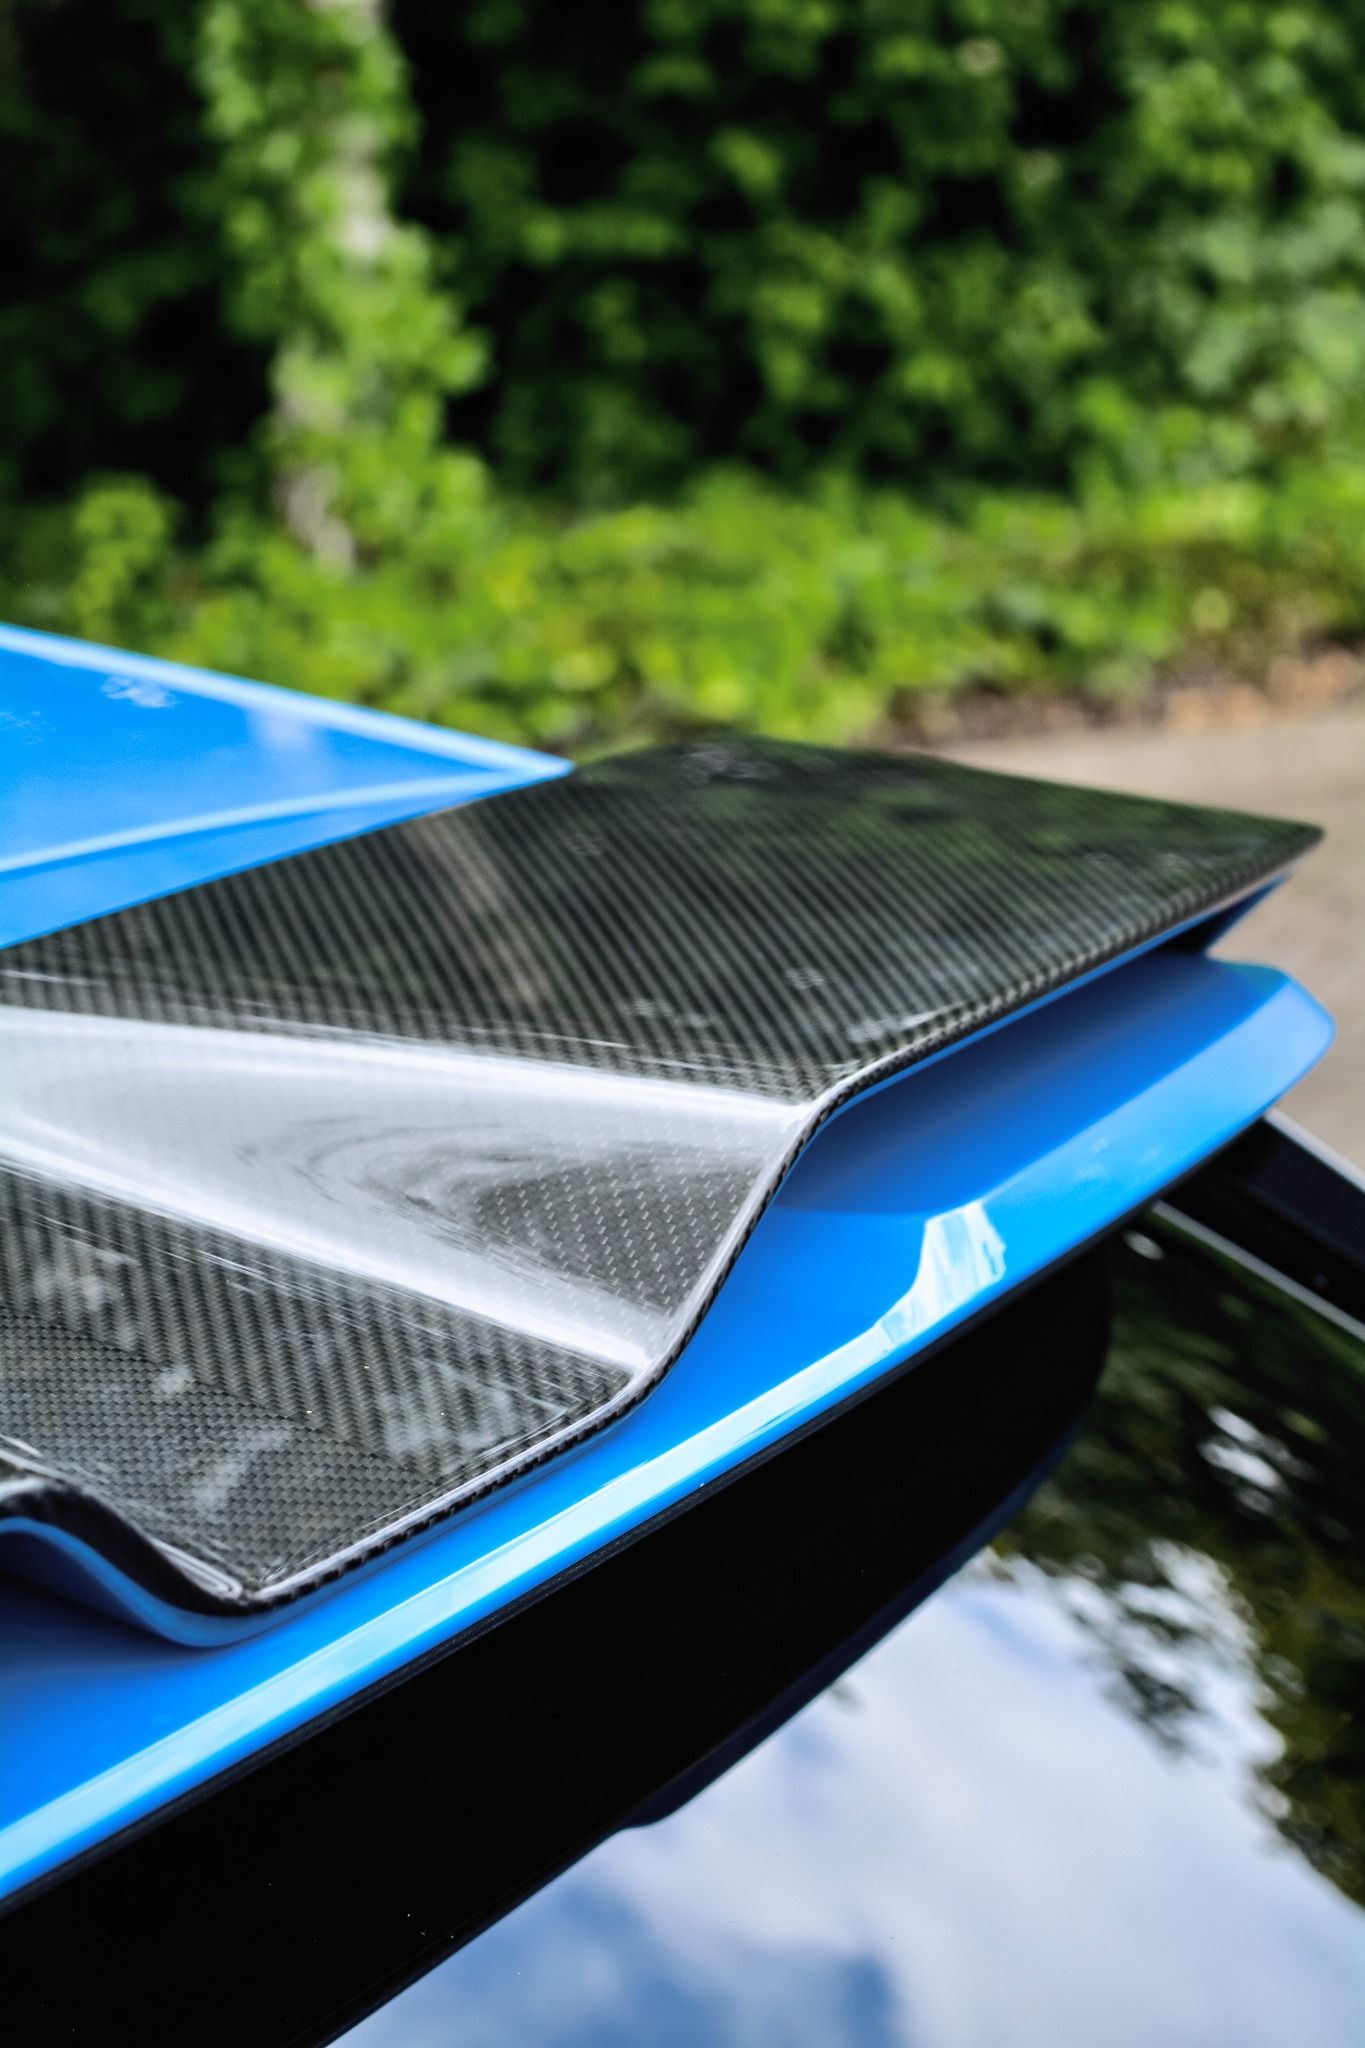 Carbon Fibre rear spoiler on an Audi RS3